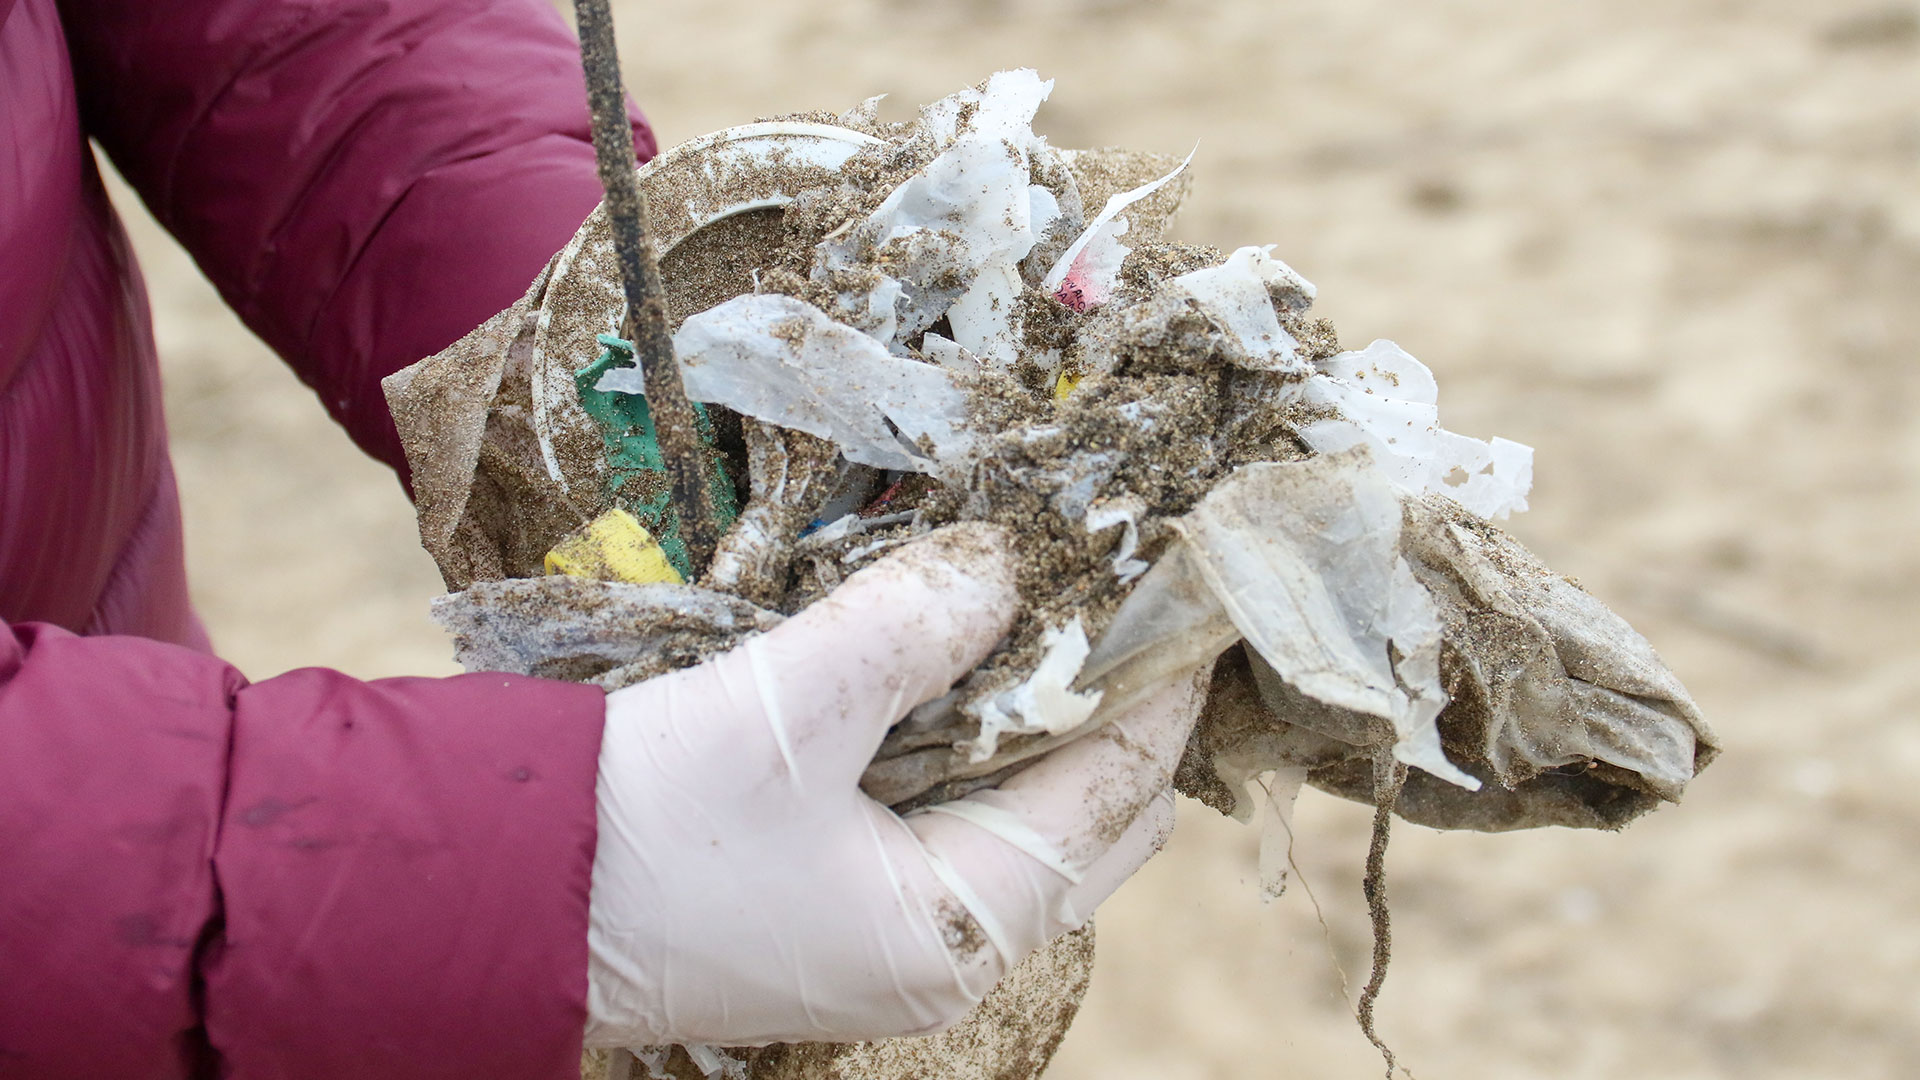 El 80% de la basura marina proviene del continente debido a la mala disposición (Vida Silvestre)